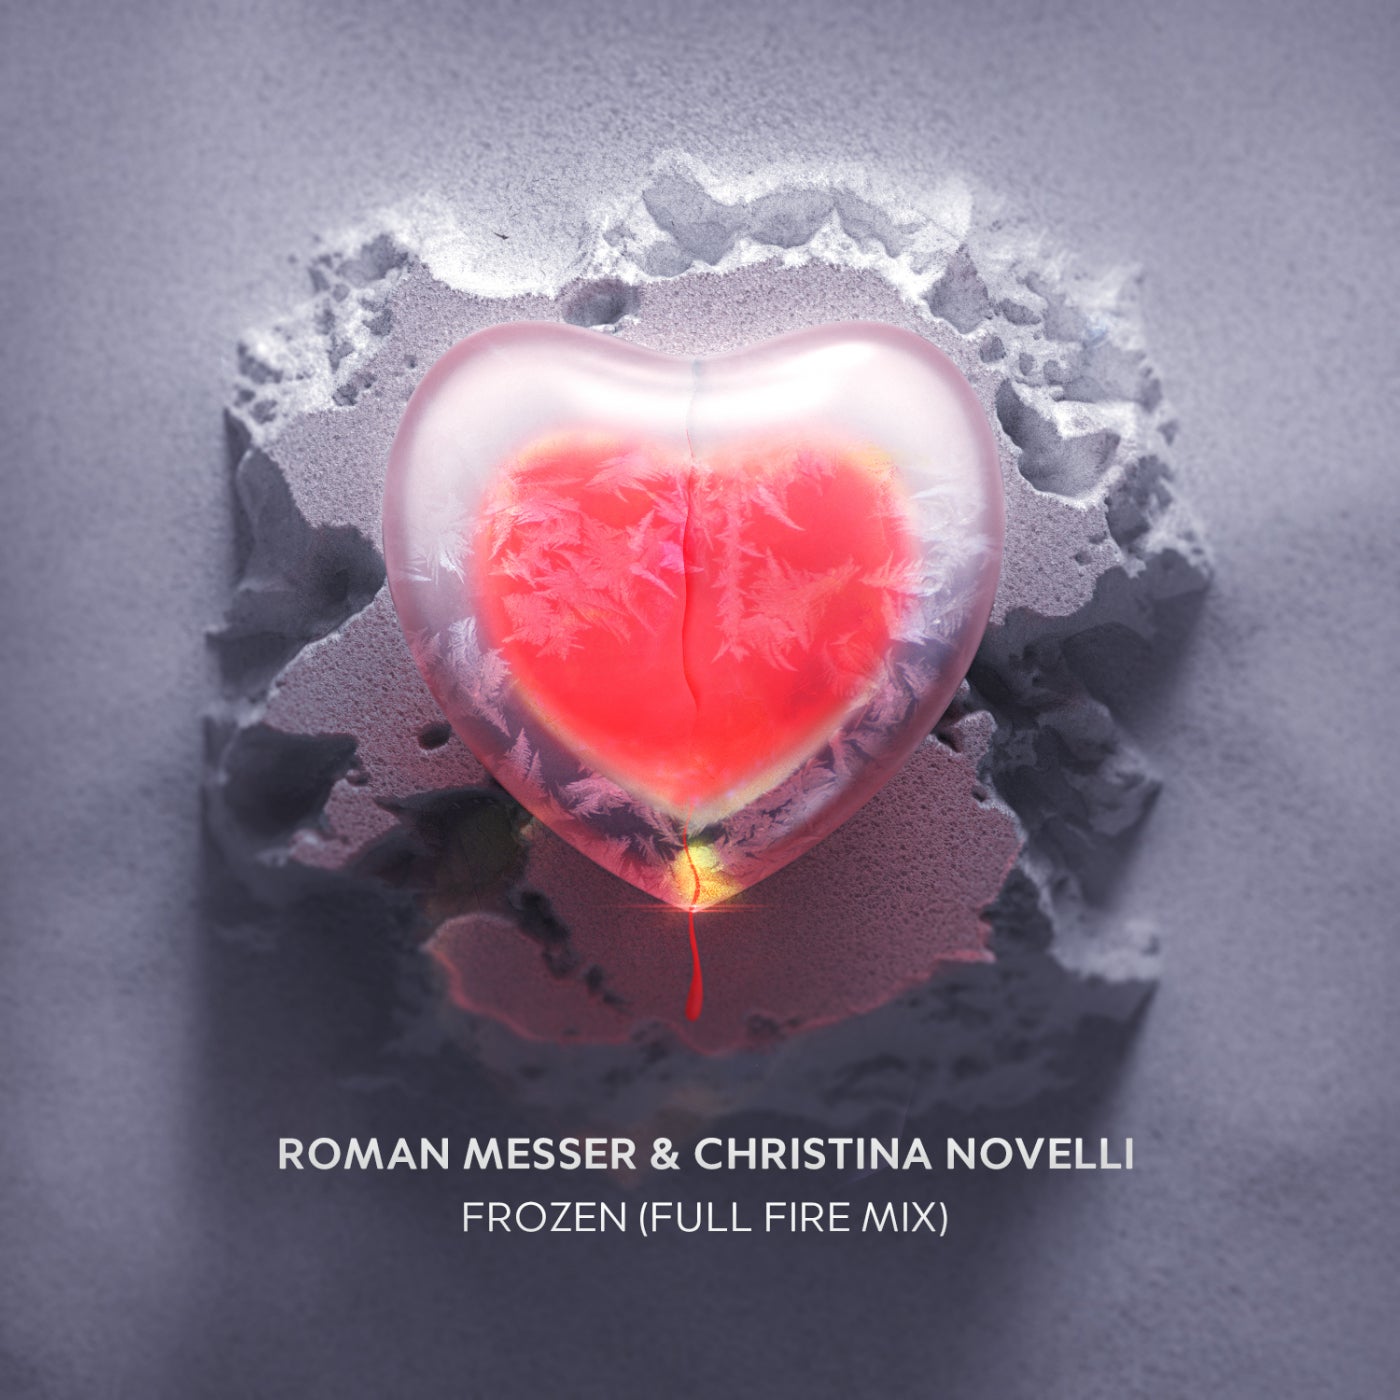 Roman Messer & Christina Novelli - Frozen (Extended Full Fire Mix)